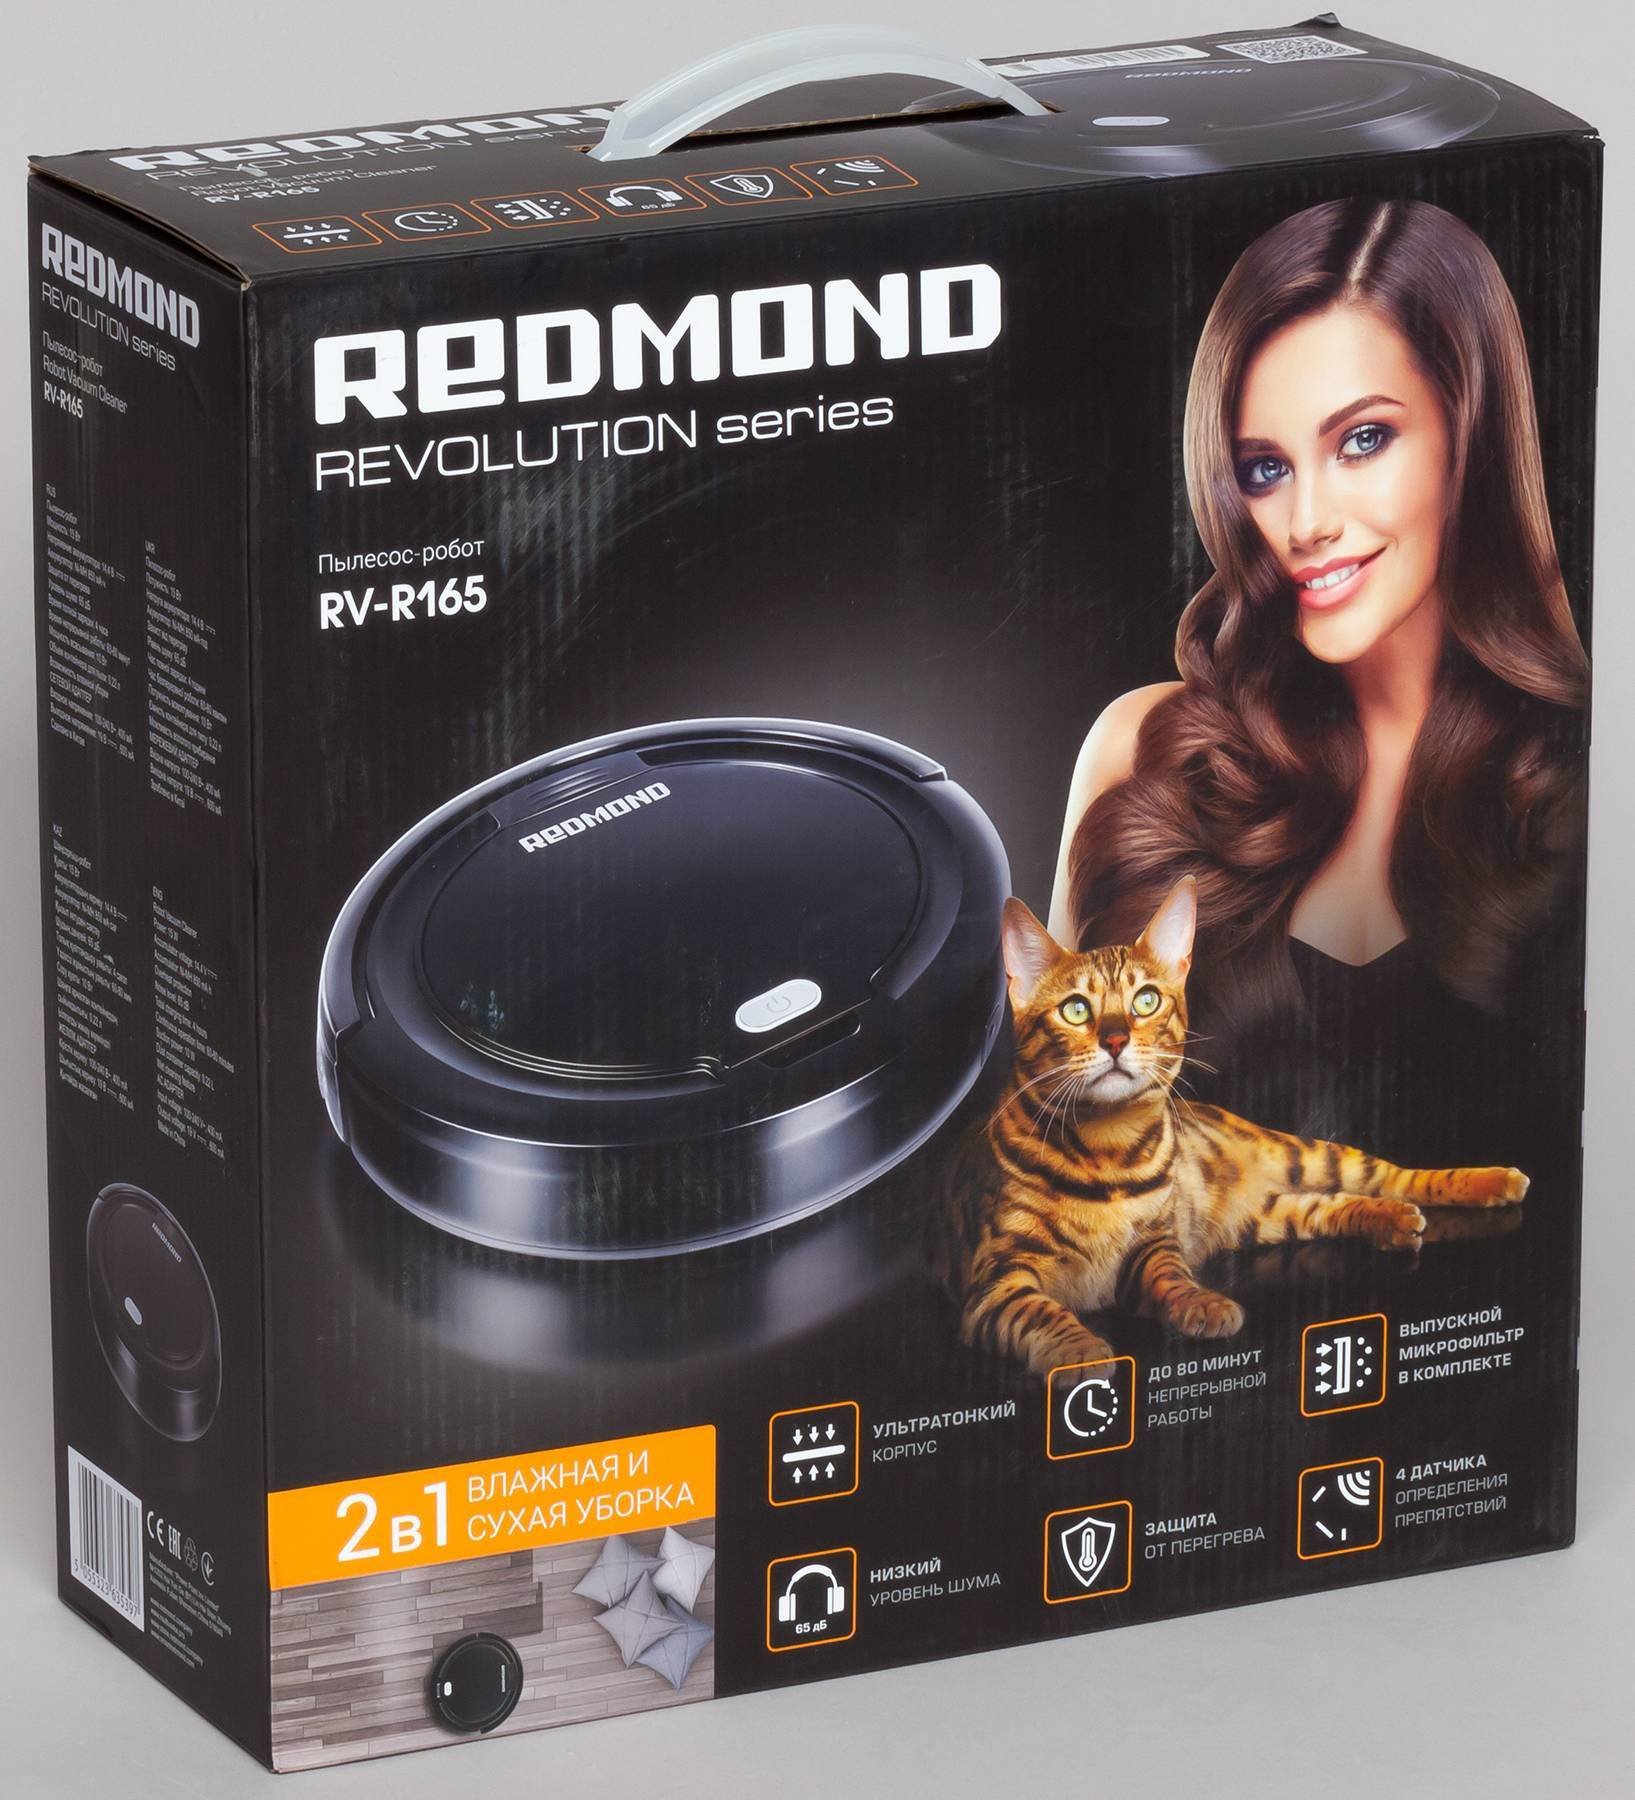 Redmond r-300 — недорогой робот-пылесос с 4 режимами уборки